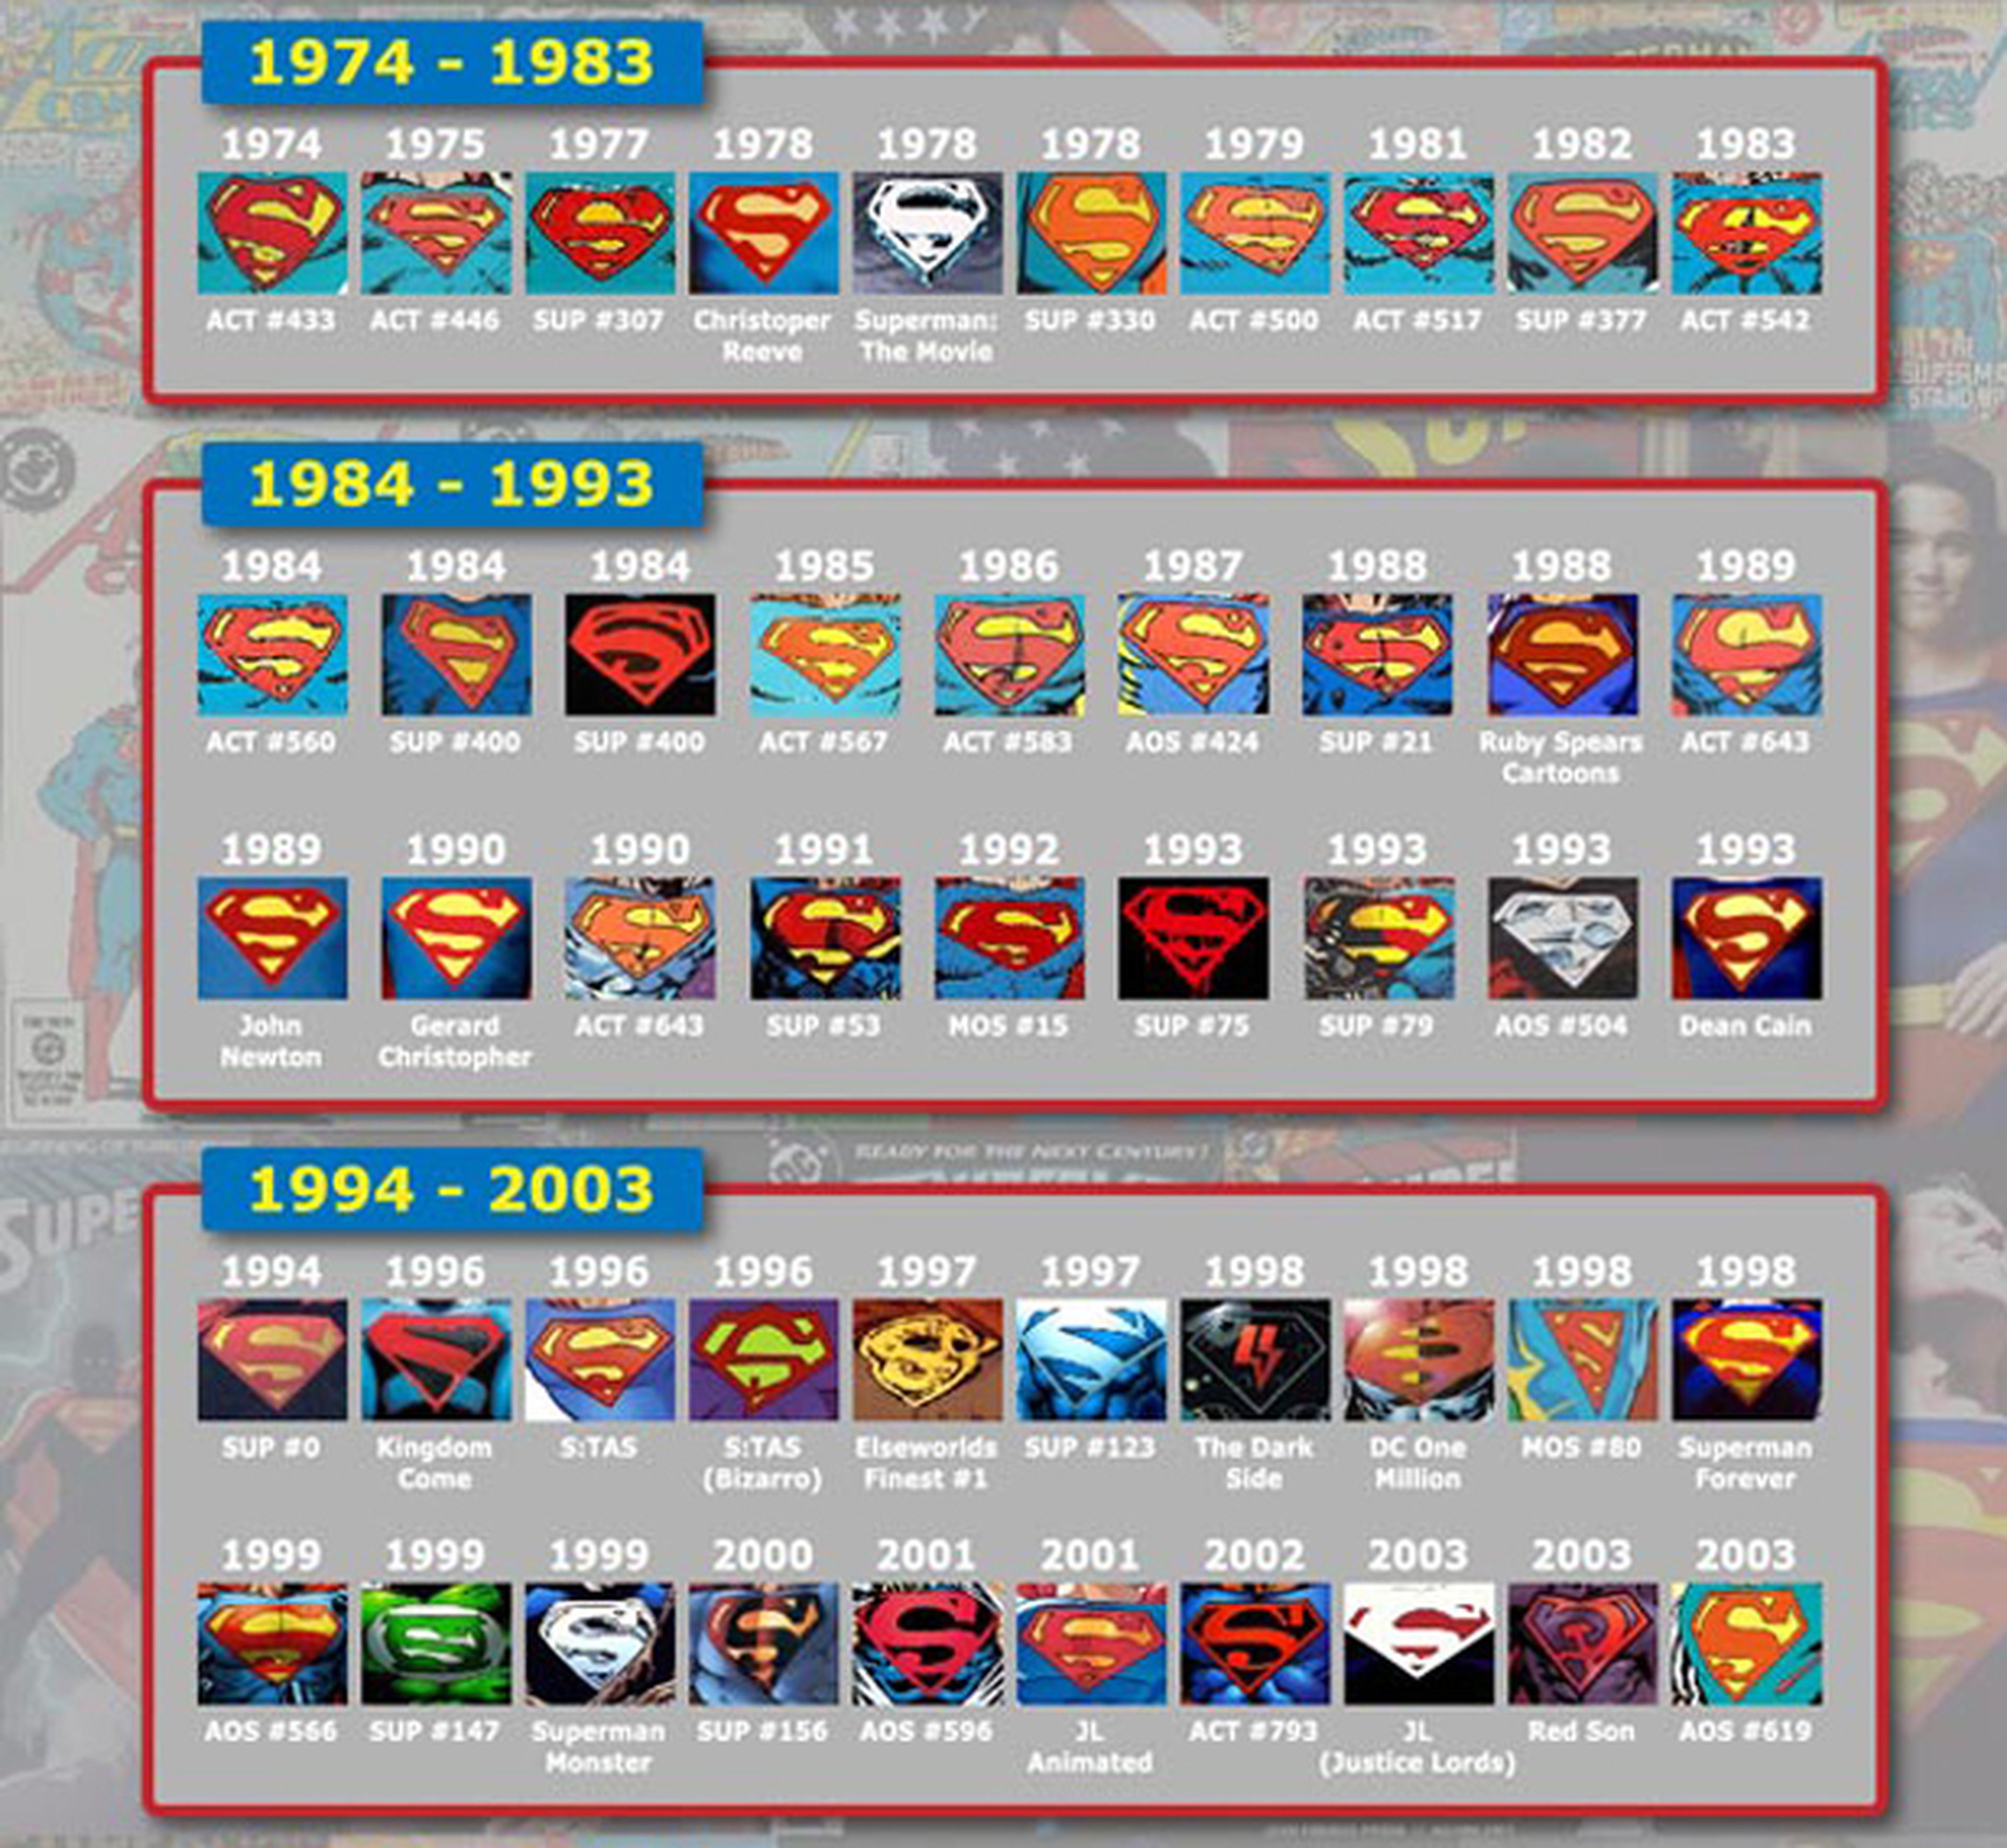 La S de Superman durante sus 75 años